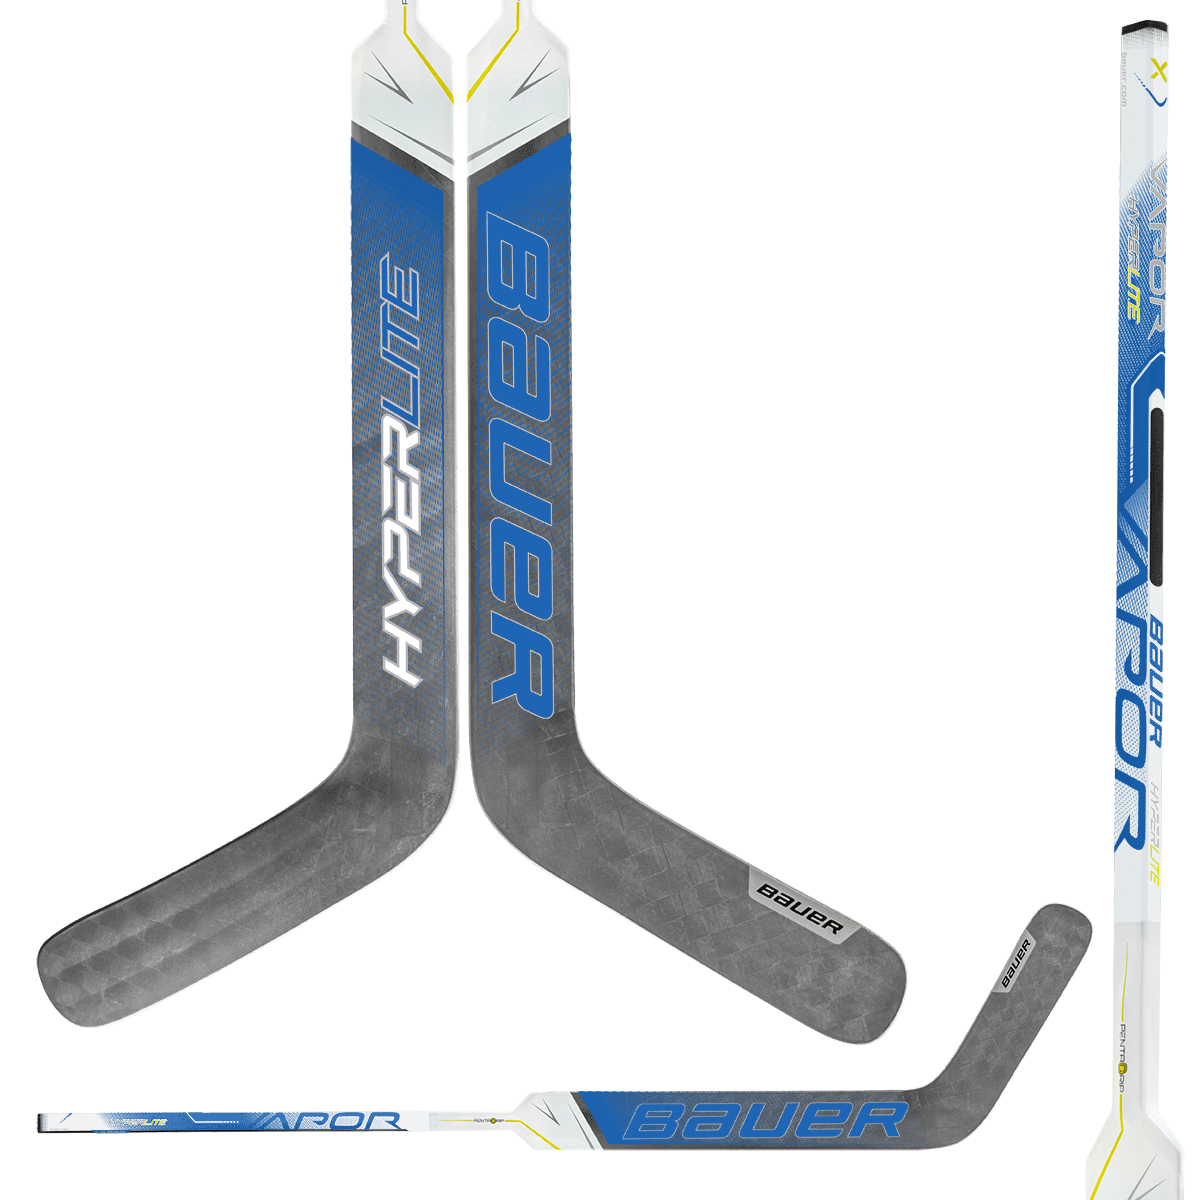 Bauer Vapor HyperLite Composite Goalie Stick - Custom Design Toronto Inspiration